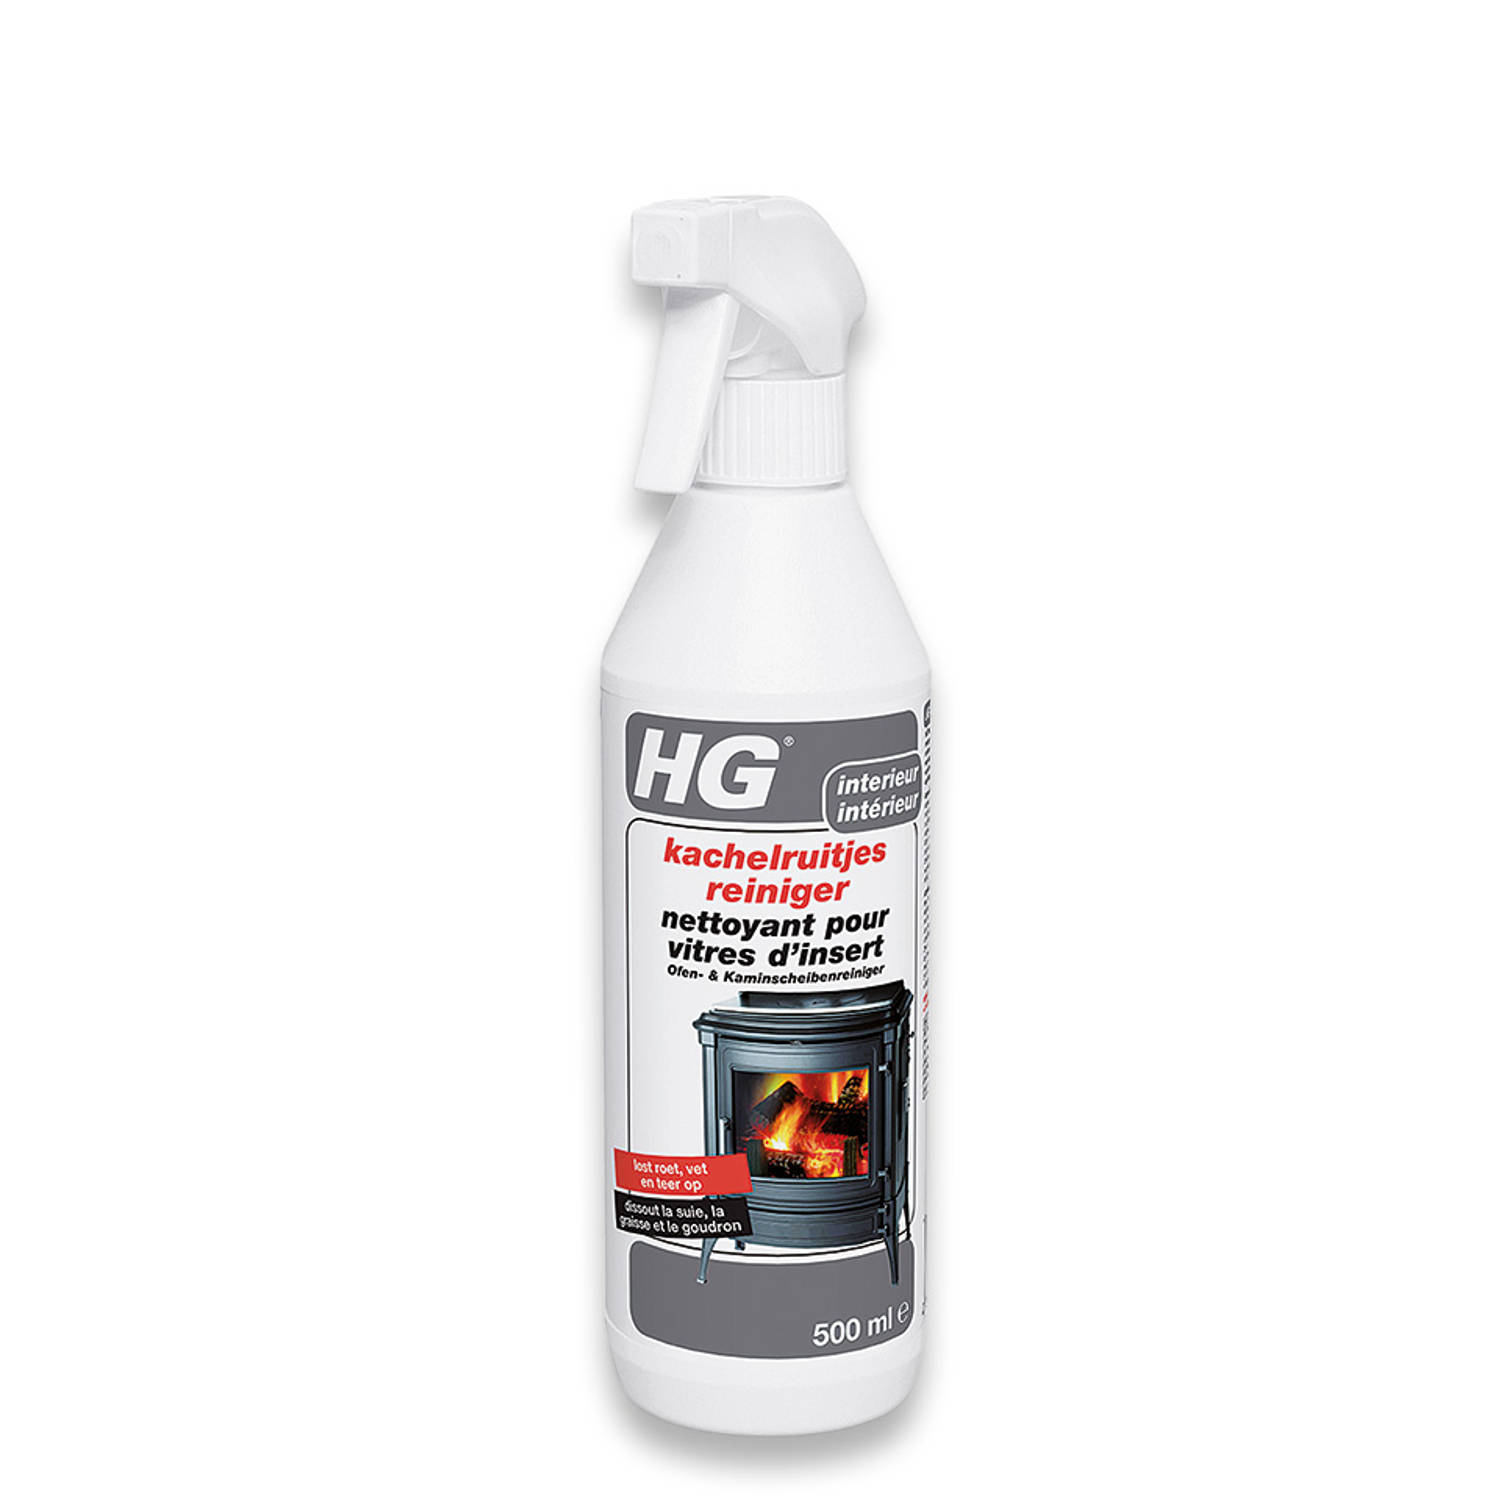 HG Kachelruitjesreiniger 500ML - Glas- en ruitenreiniger voor kachels - Verwijder roet, vet en teer van glazen ruiten van kachels en haarden